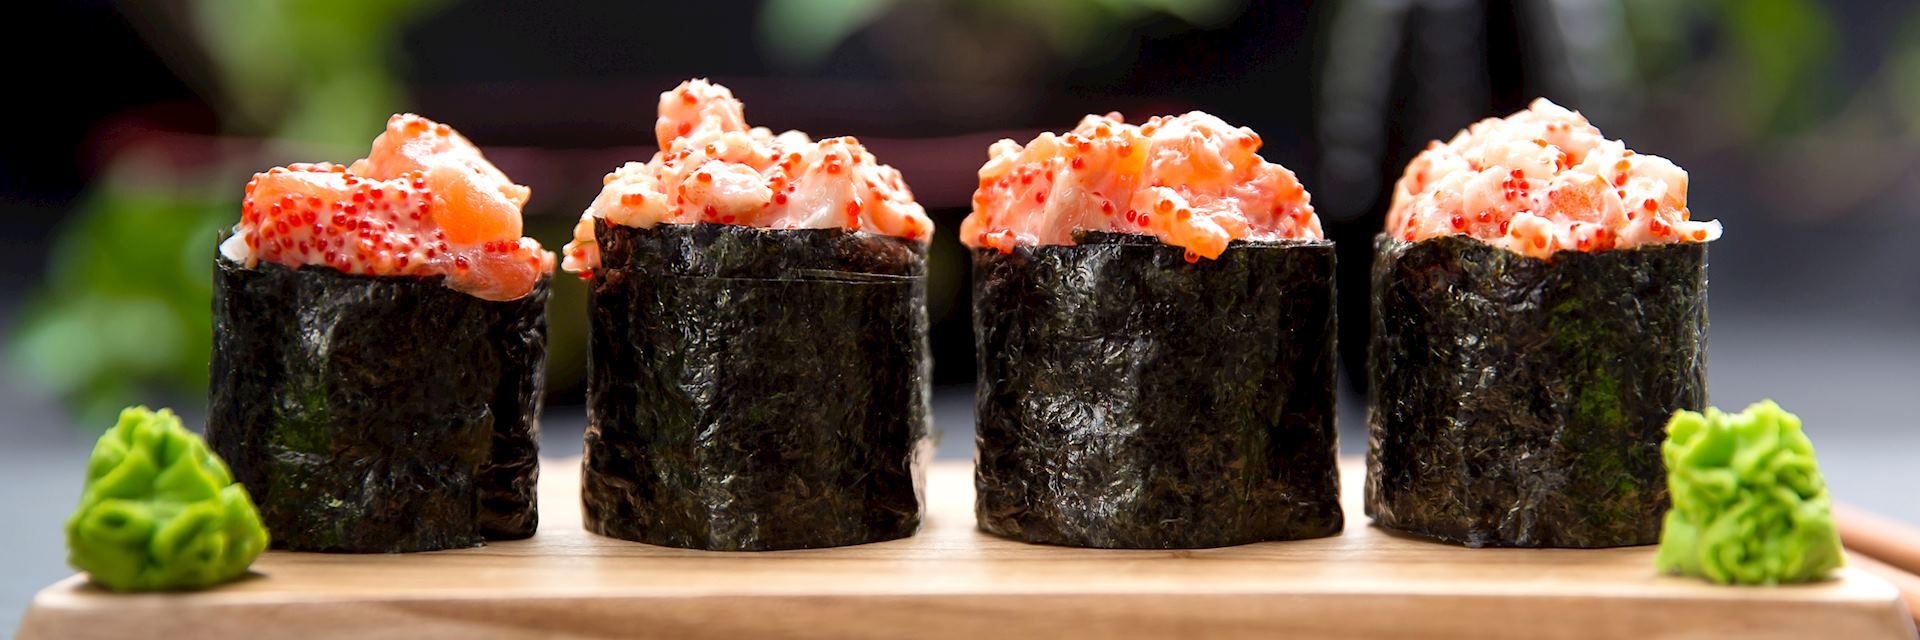 Sushi Gunkan maki with crab and salmon